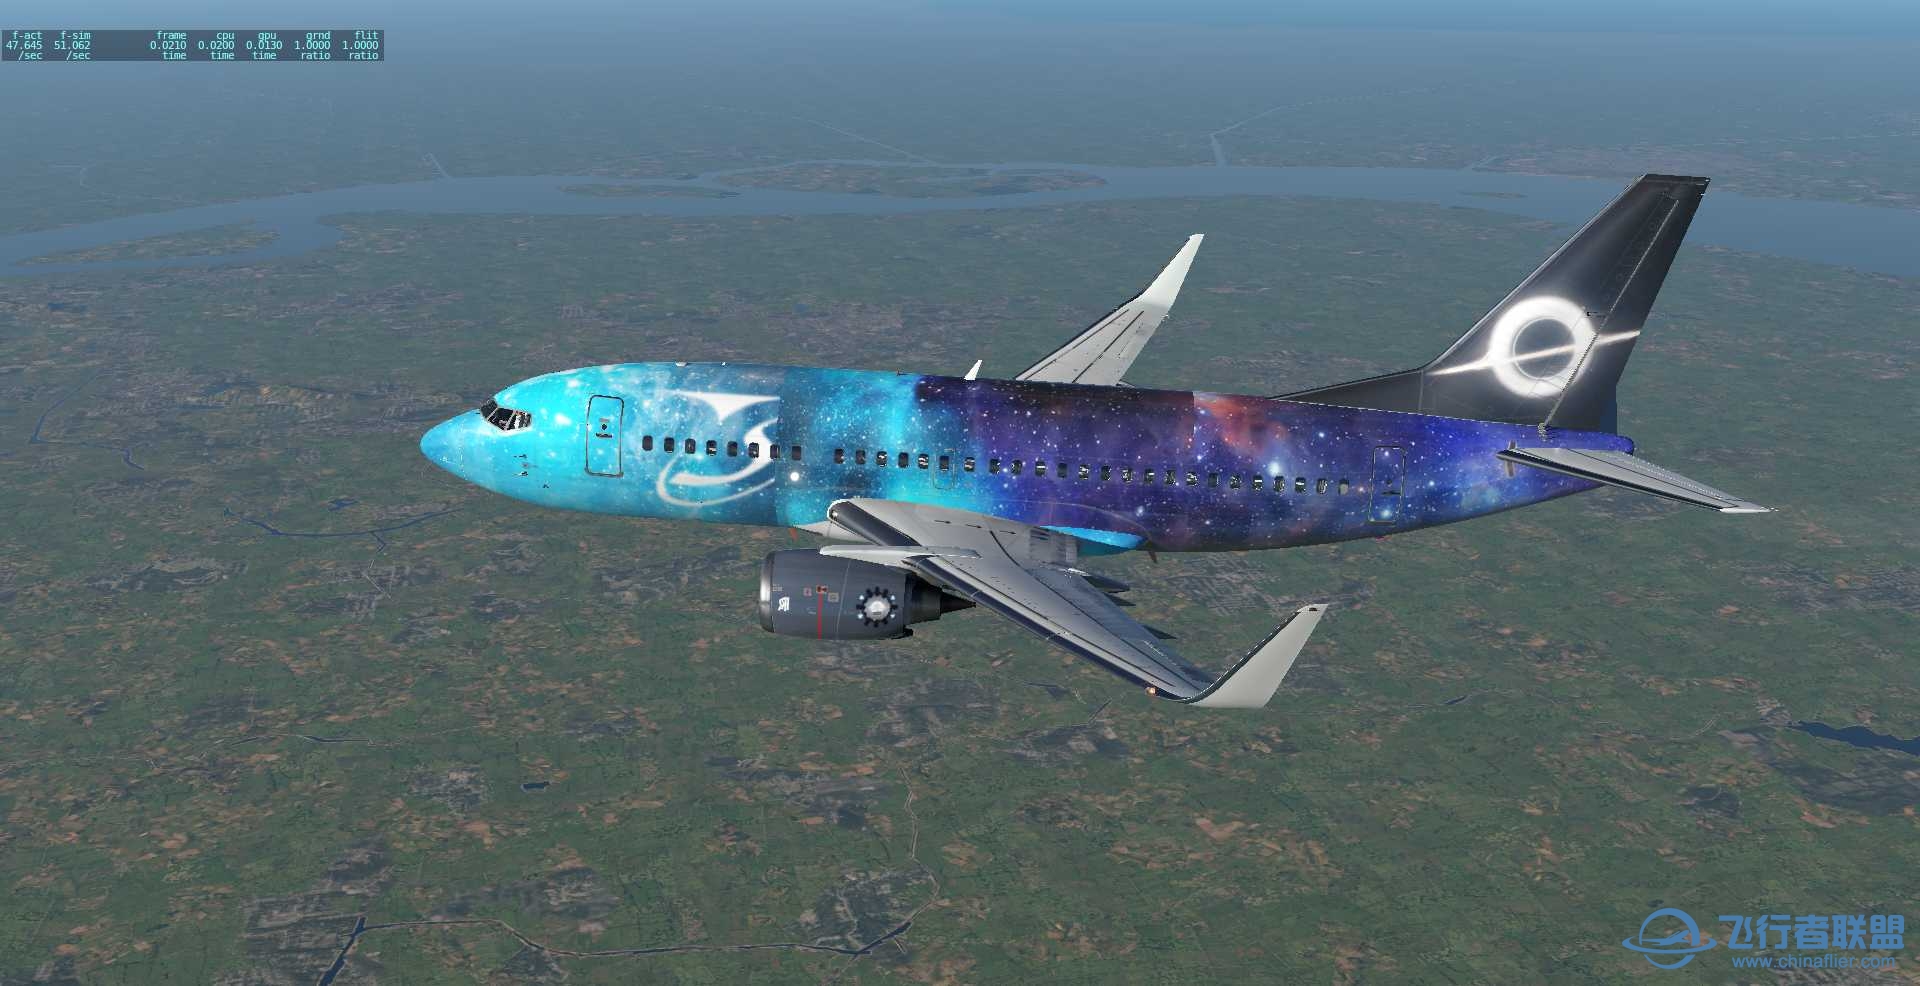 波音737-500 星空彩绘机 ZSPD-ZBAD航线美图-72 